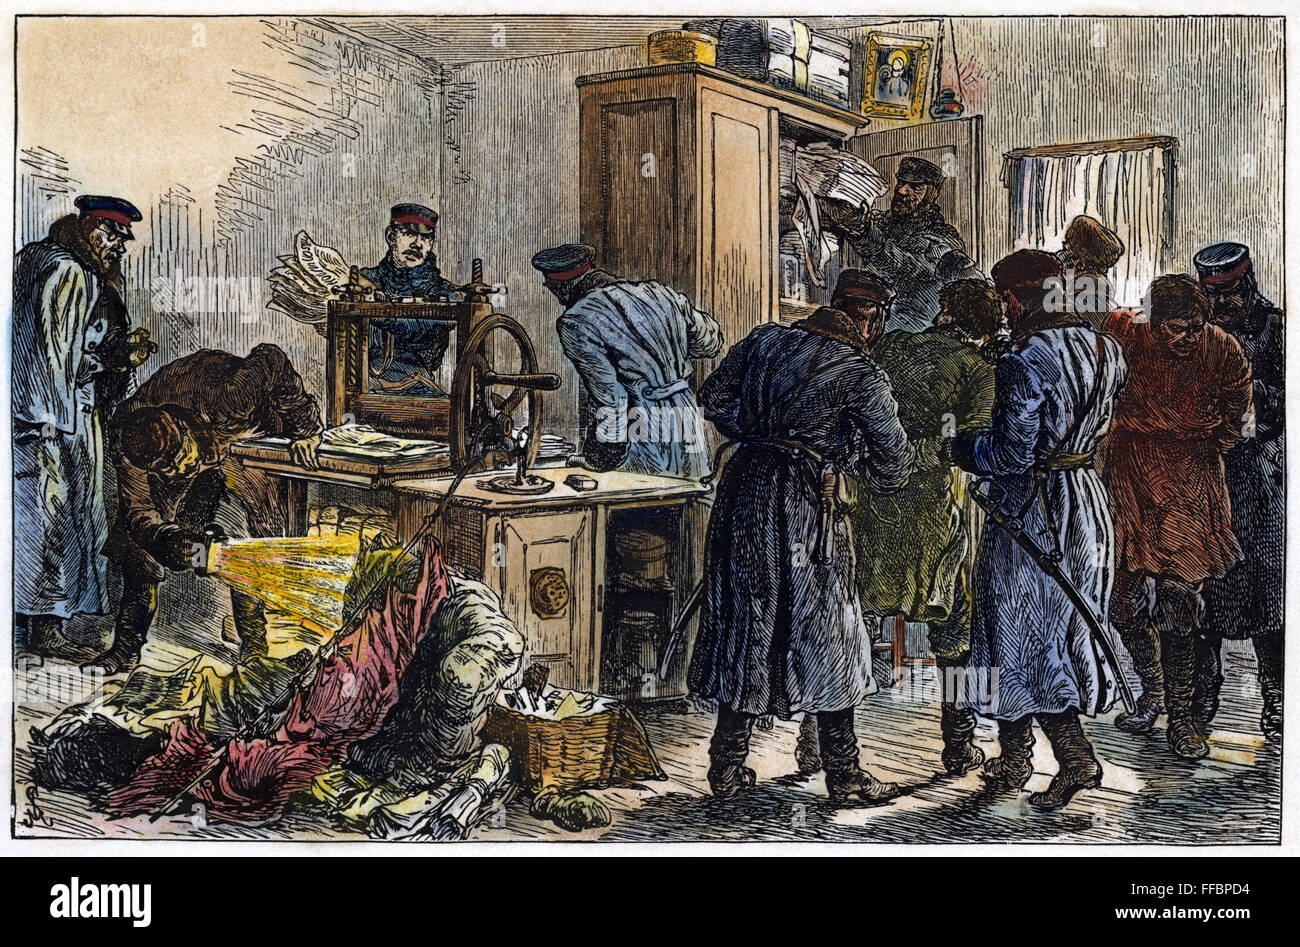 RUSSLAND: NIHILISTEN, 1887. / nPolice in St. Petersurg, Russland, entdecken eine Nihilist Druckmaschine. Holz, Gravur, Englisch, 1887. Stockfoto